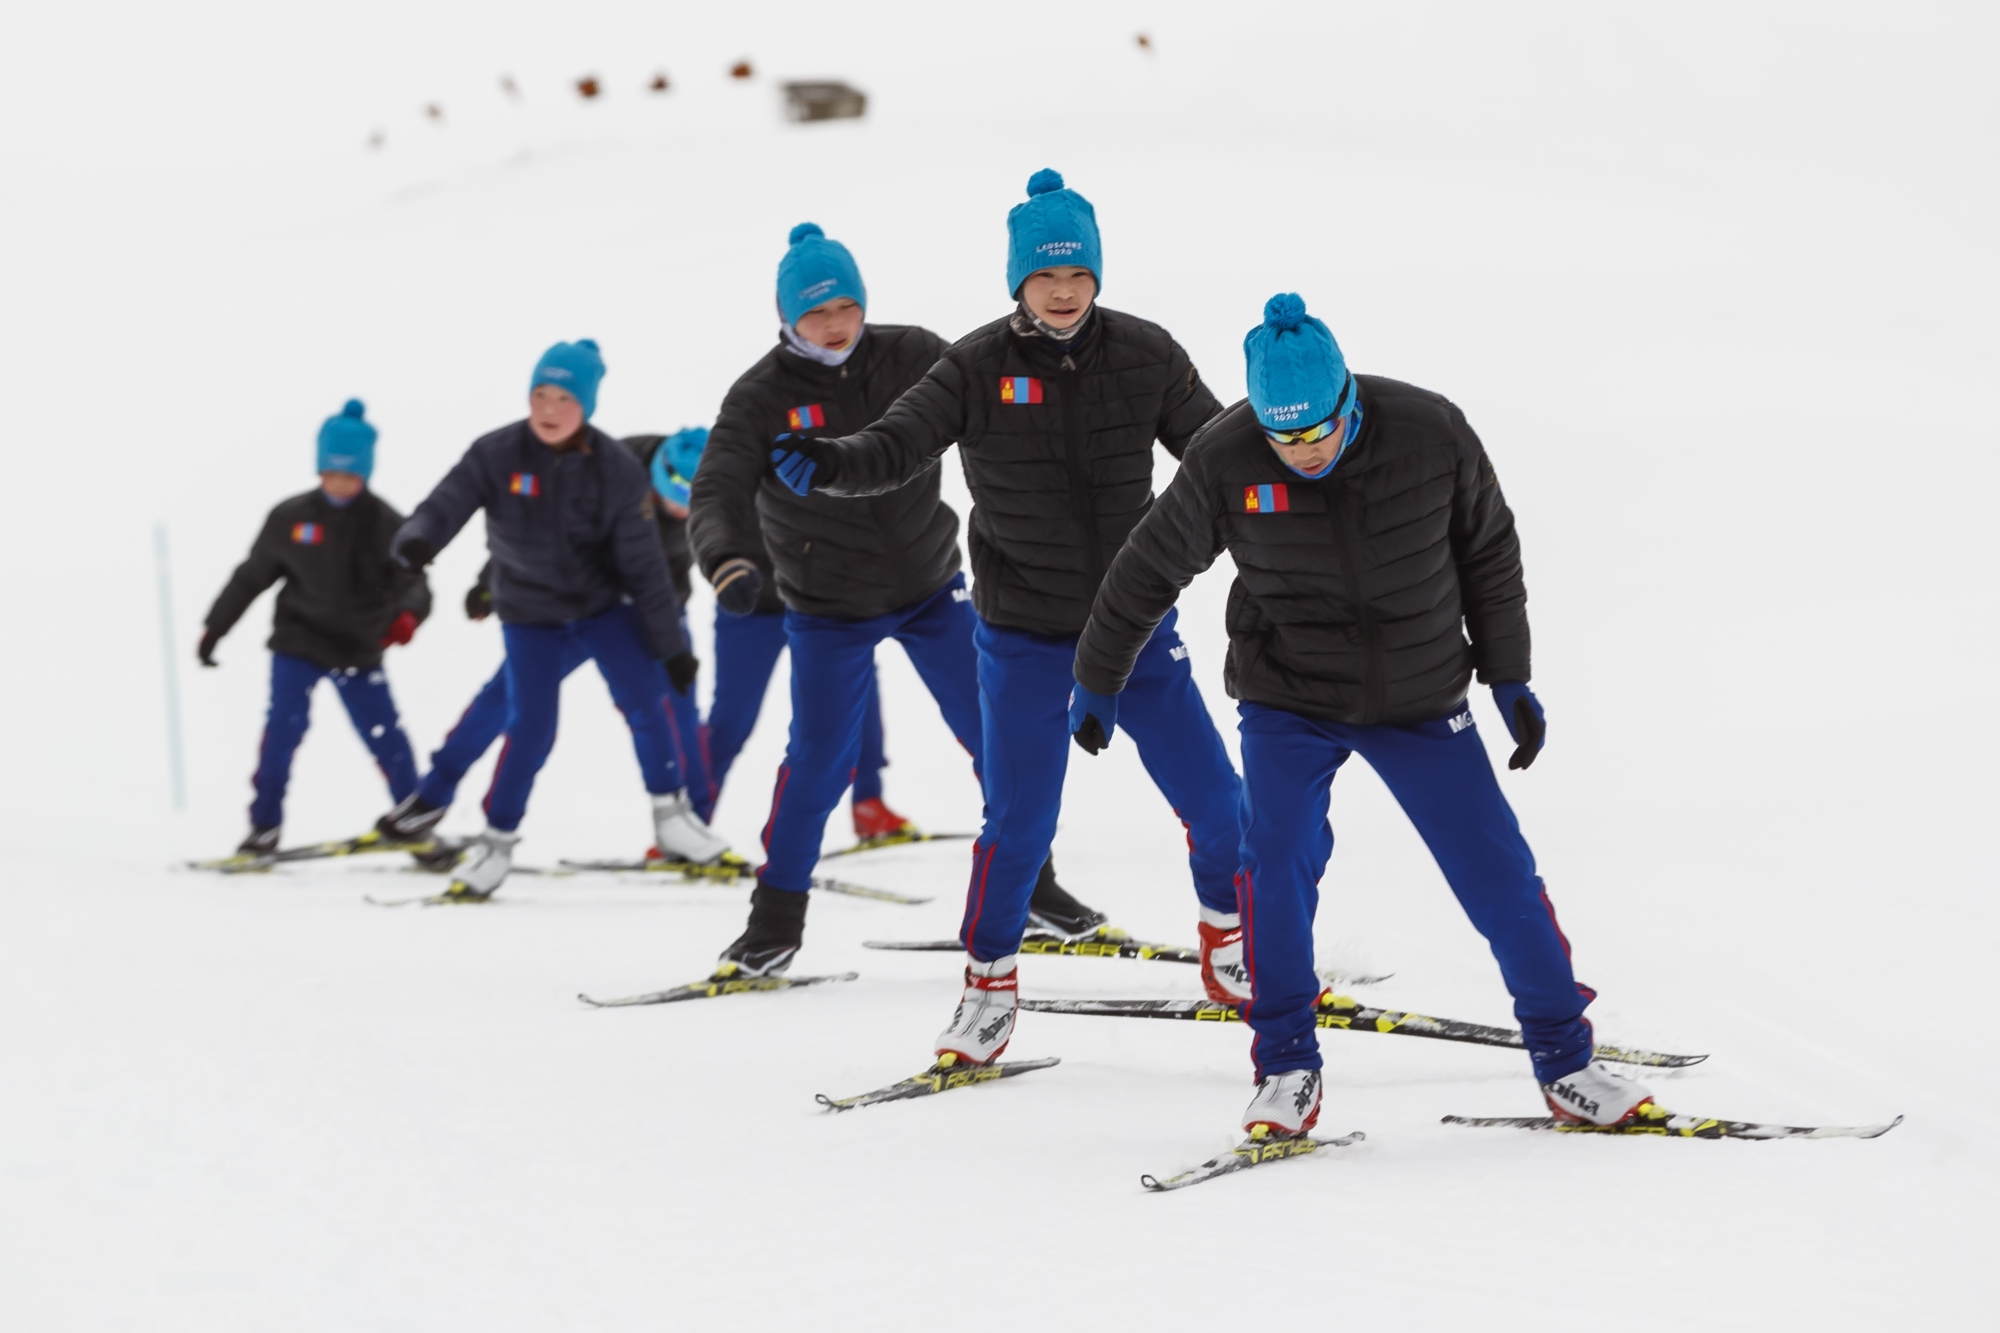 Les jeunes skieurs de fond venus de Mongolie s'entraînent près du col du Marchairuz.